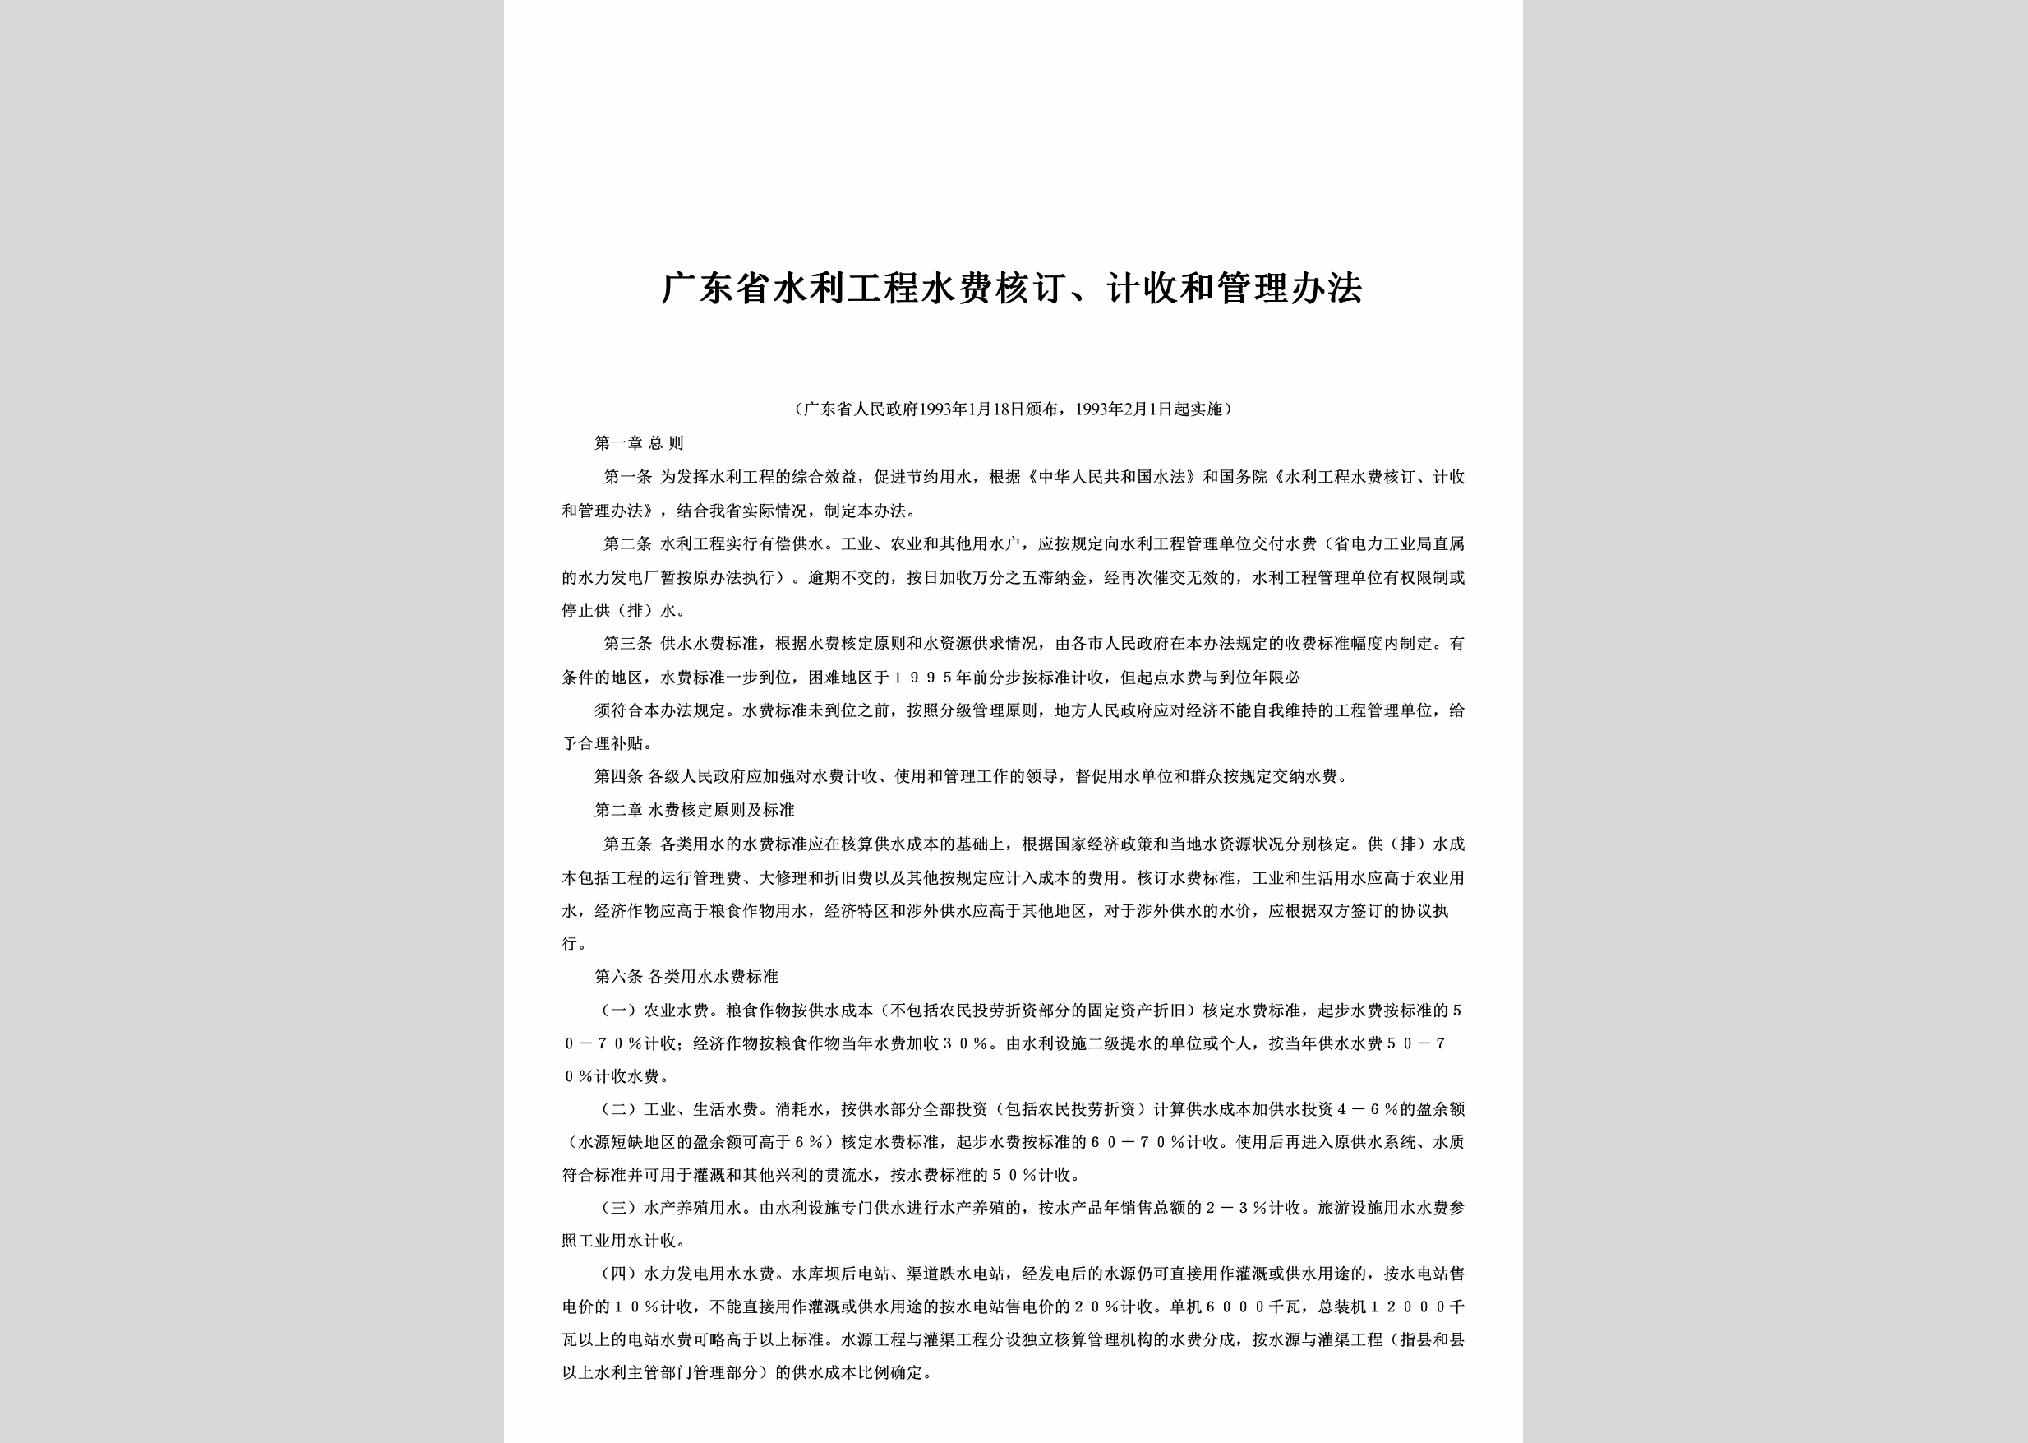 粤府[1993]10号：广东省水利工程水费核订、计收和管理办法